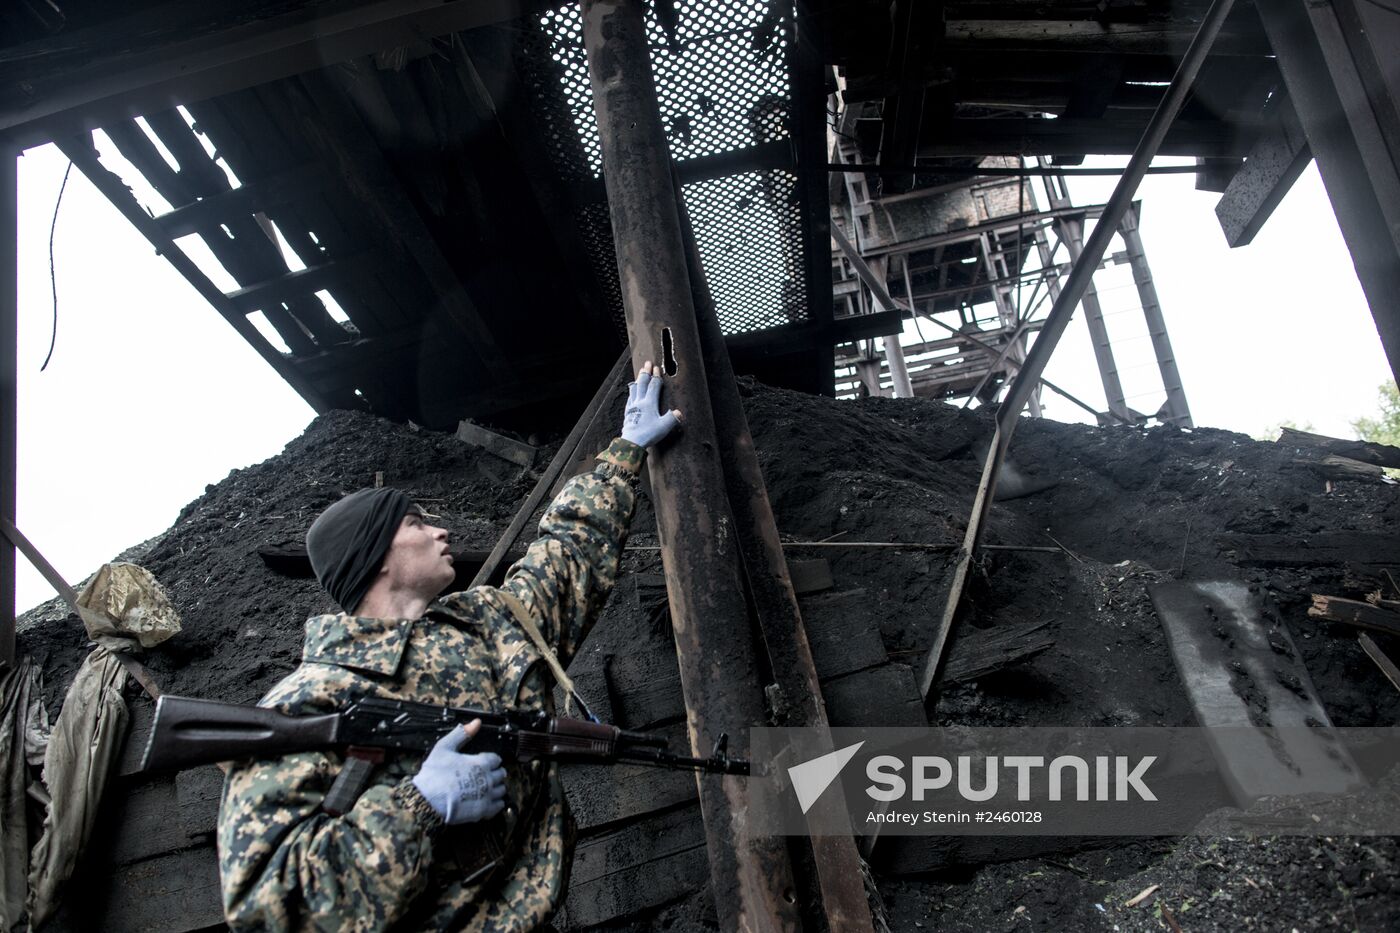 Petrovskaya coal mine in Donetsk